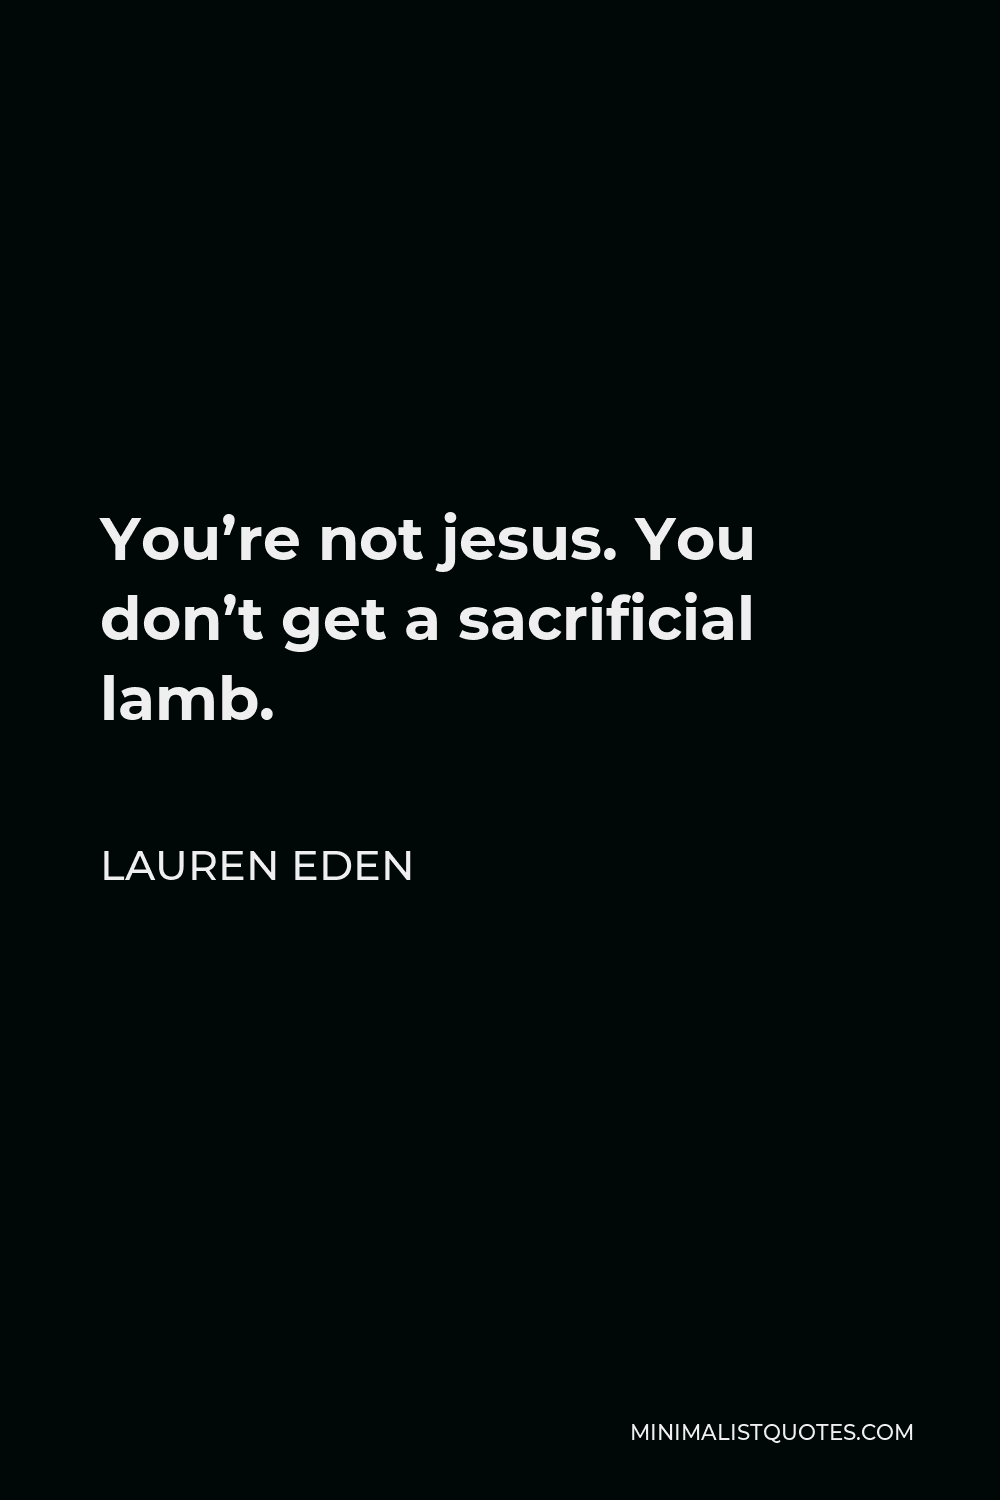 Lauren Eden Quote - You’re not jesus. You don’t get a sacrificial lamb.